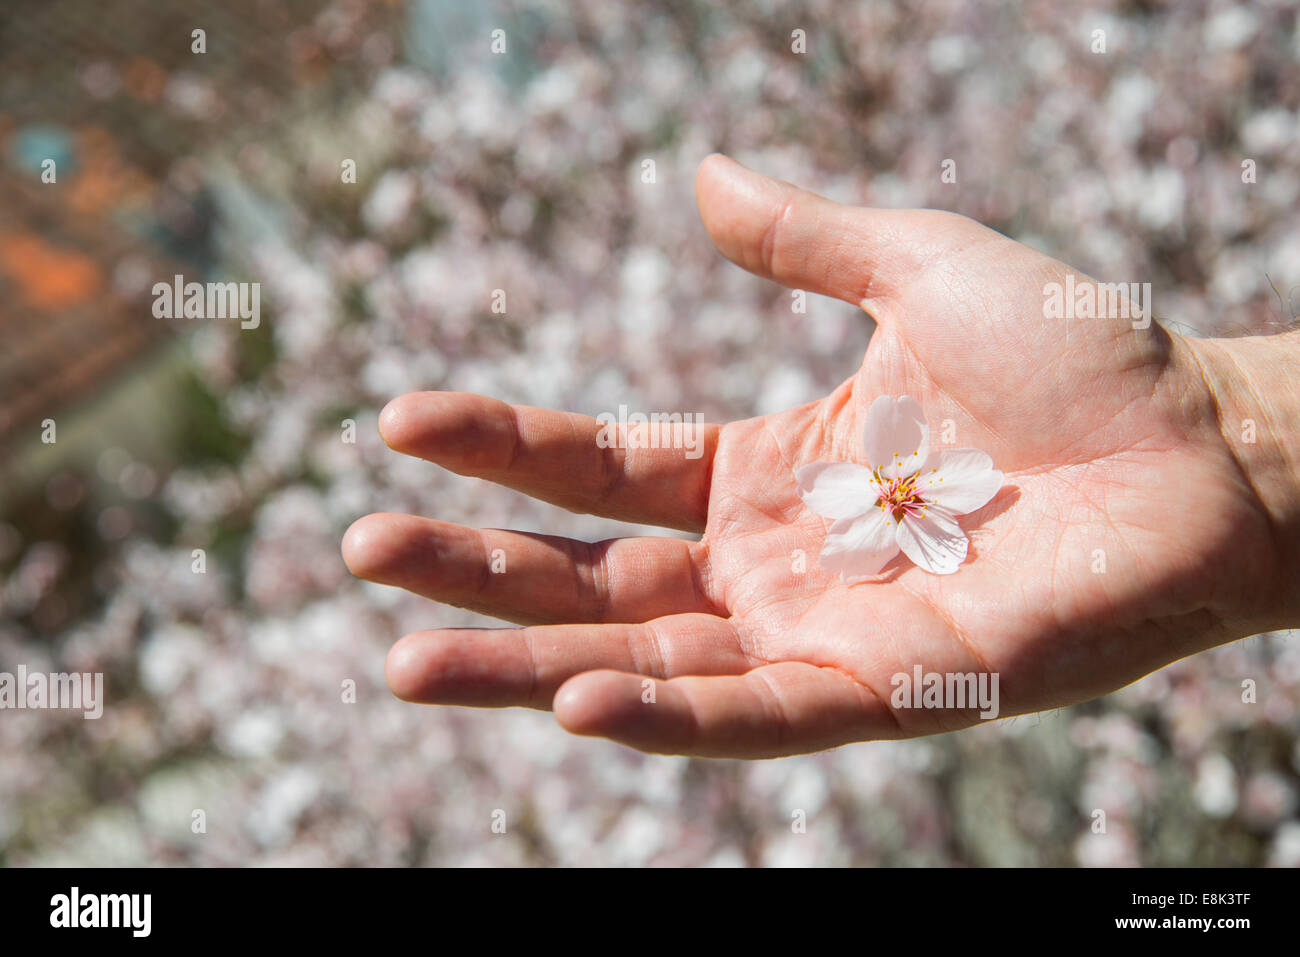 Mannes Hand mit der Handfläche zeigt eine Blüte der Mandelbäume. Stockfoto